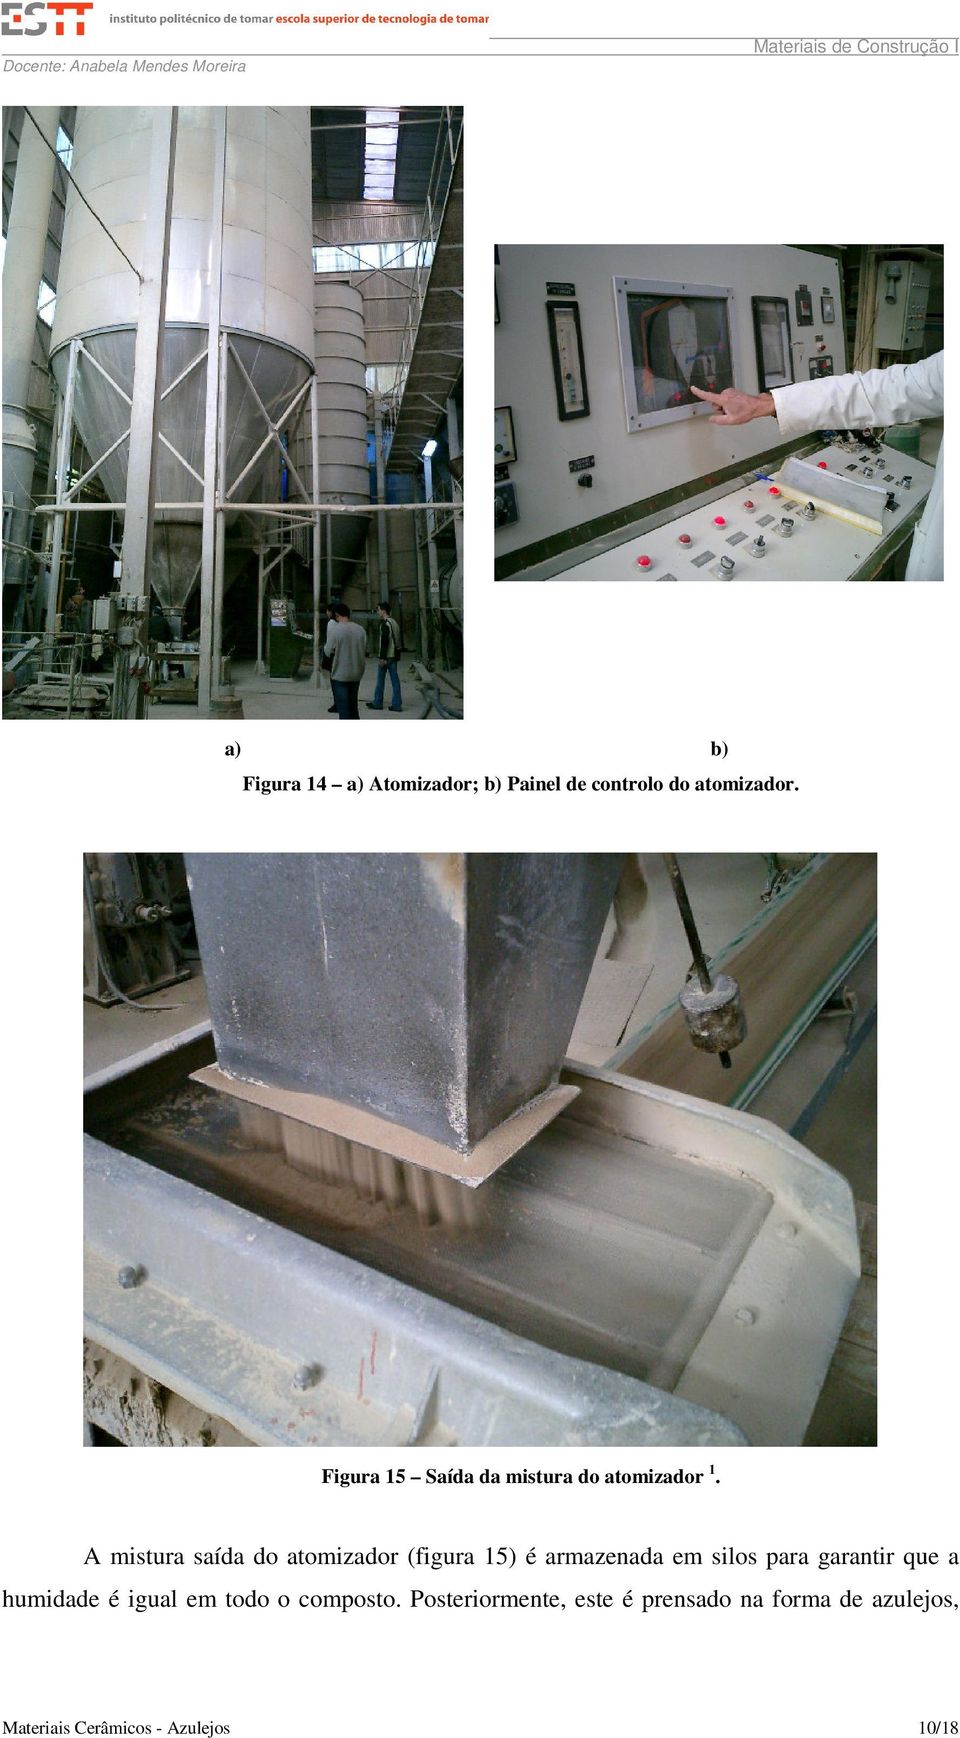 A mistura saída do atomizador (figura 15) é armazenada em silos para garantir